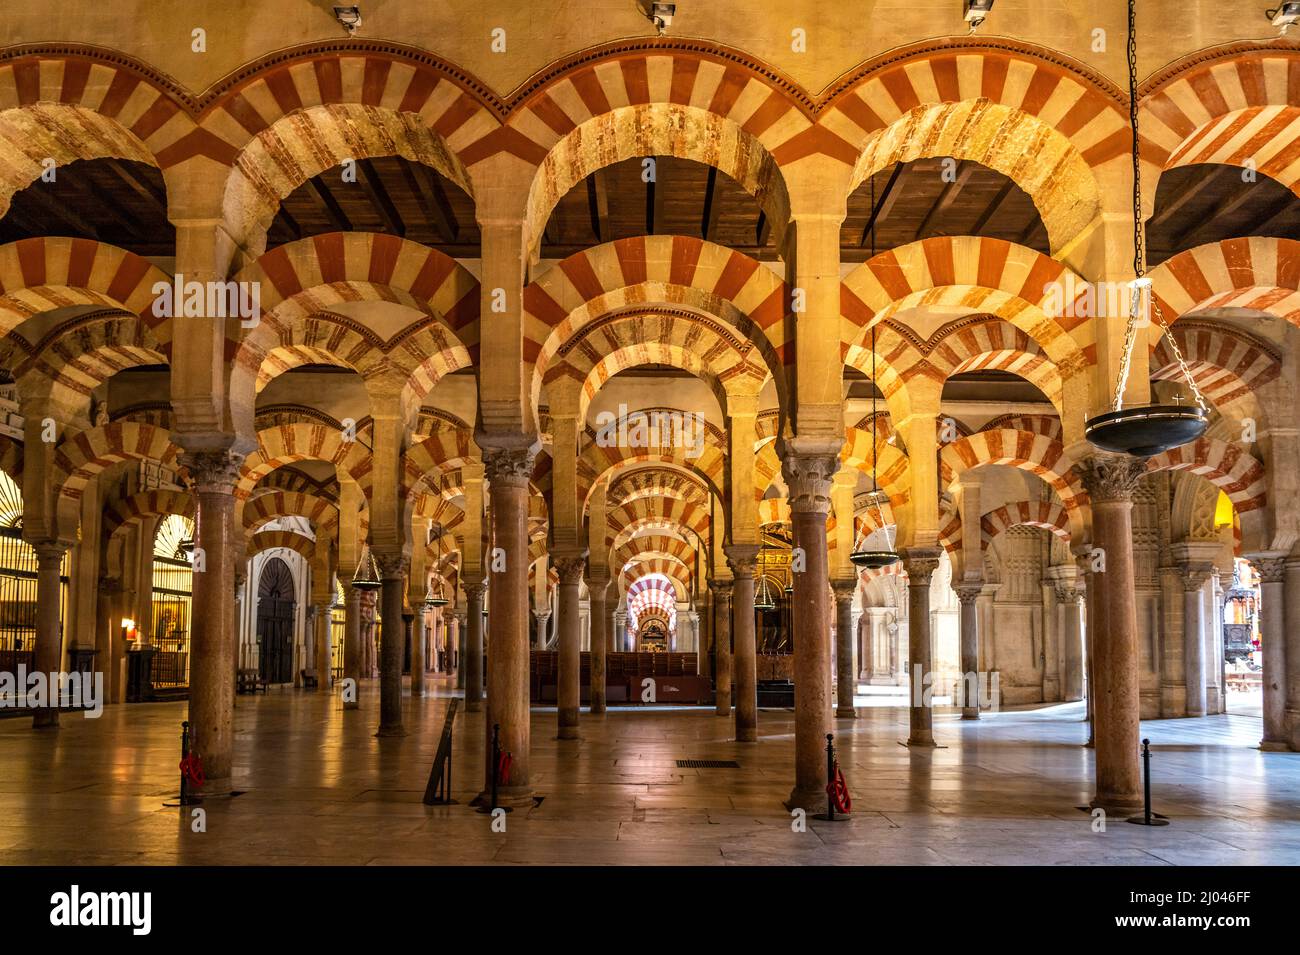 Maurische Säulen und Bögen im Innenraum der Mezquita - Catedral de Córdoba in Cordoba, Andalusien, Spanien | maurische Bögen und Säulen der Mezqu Stockfoto